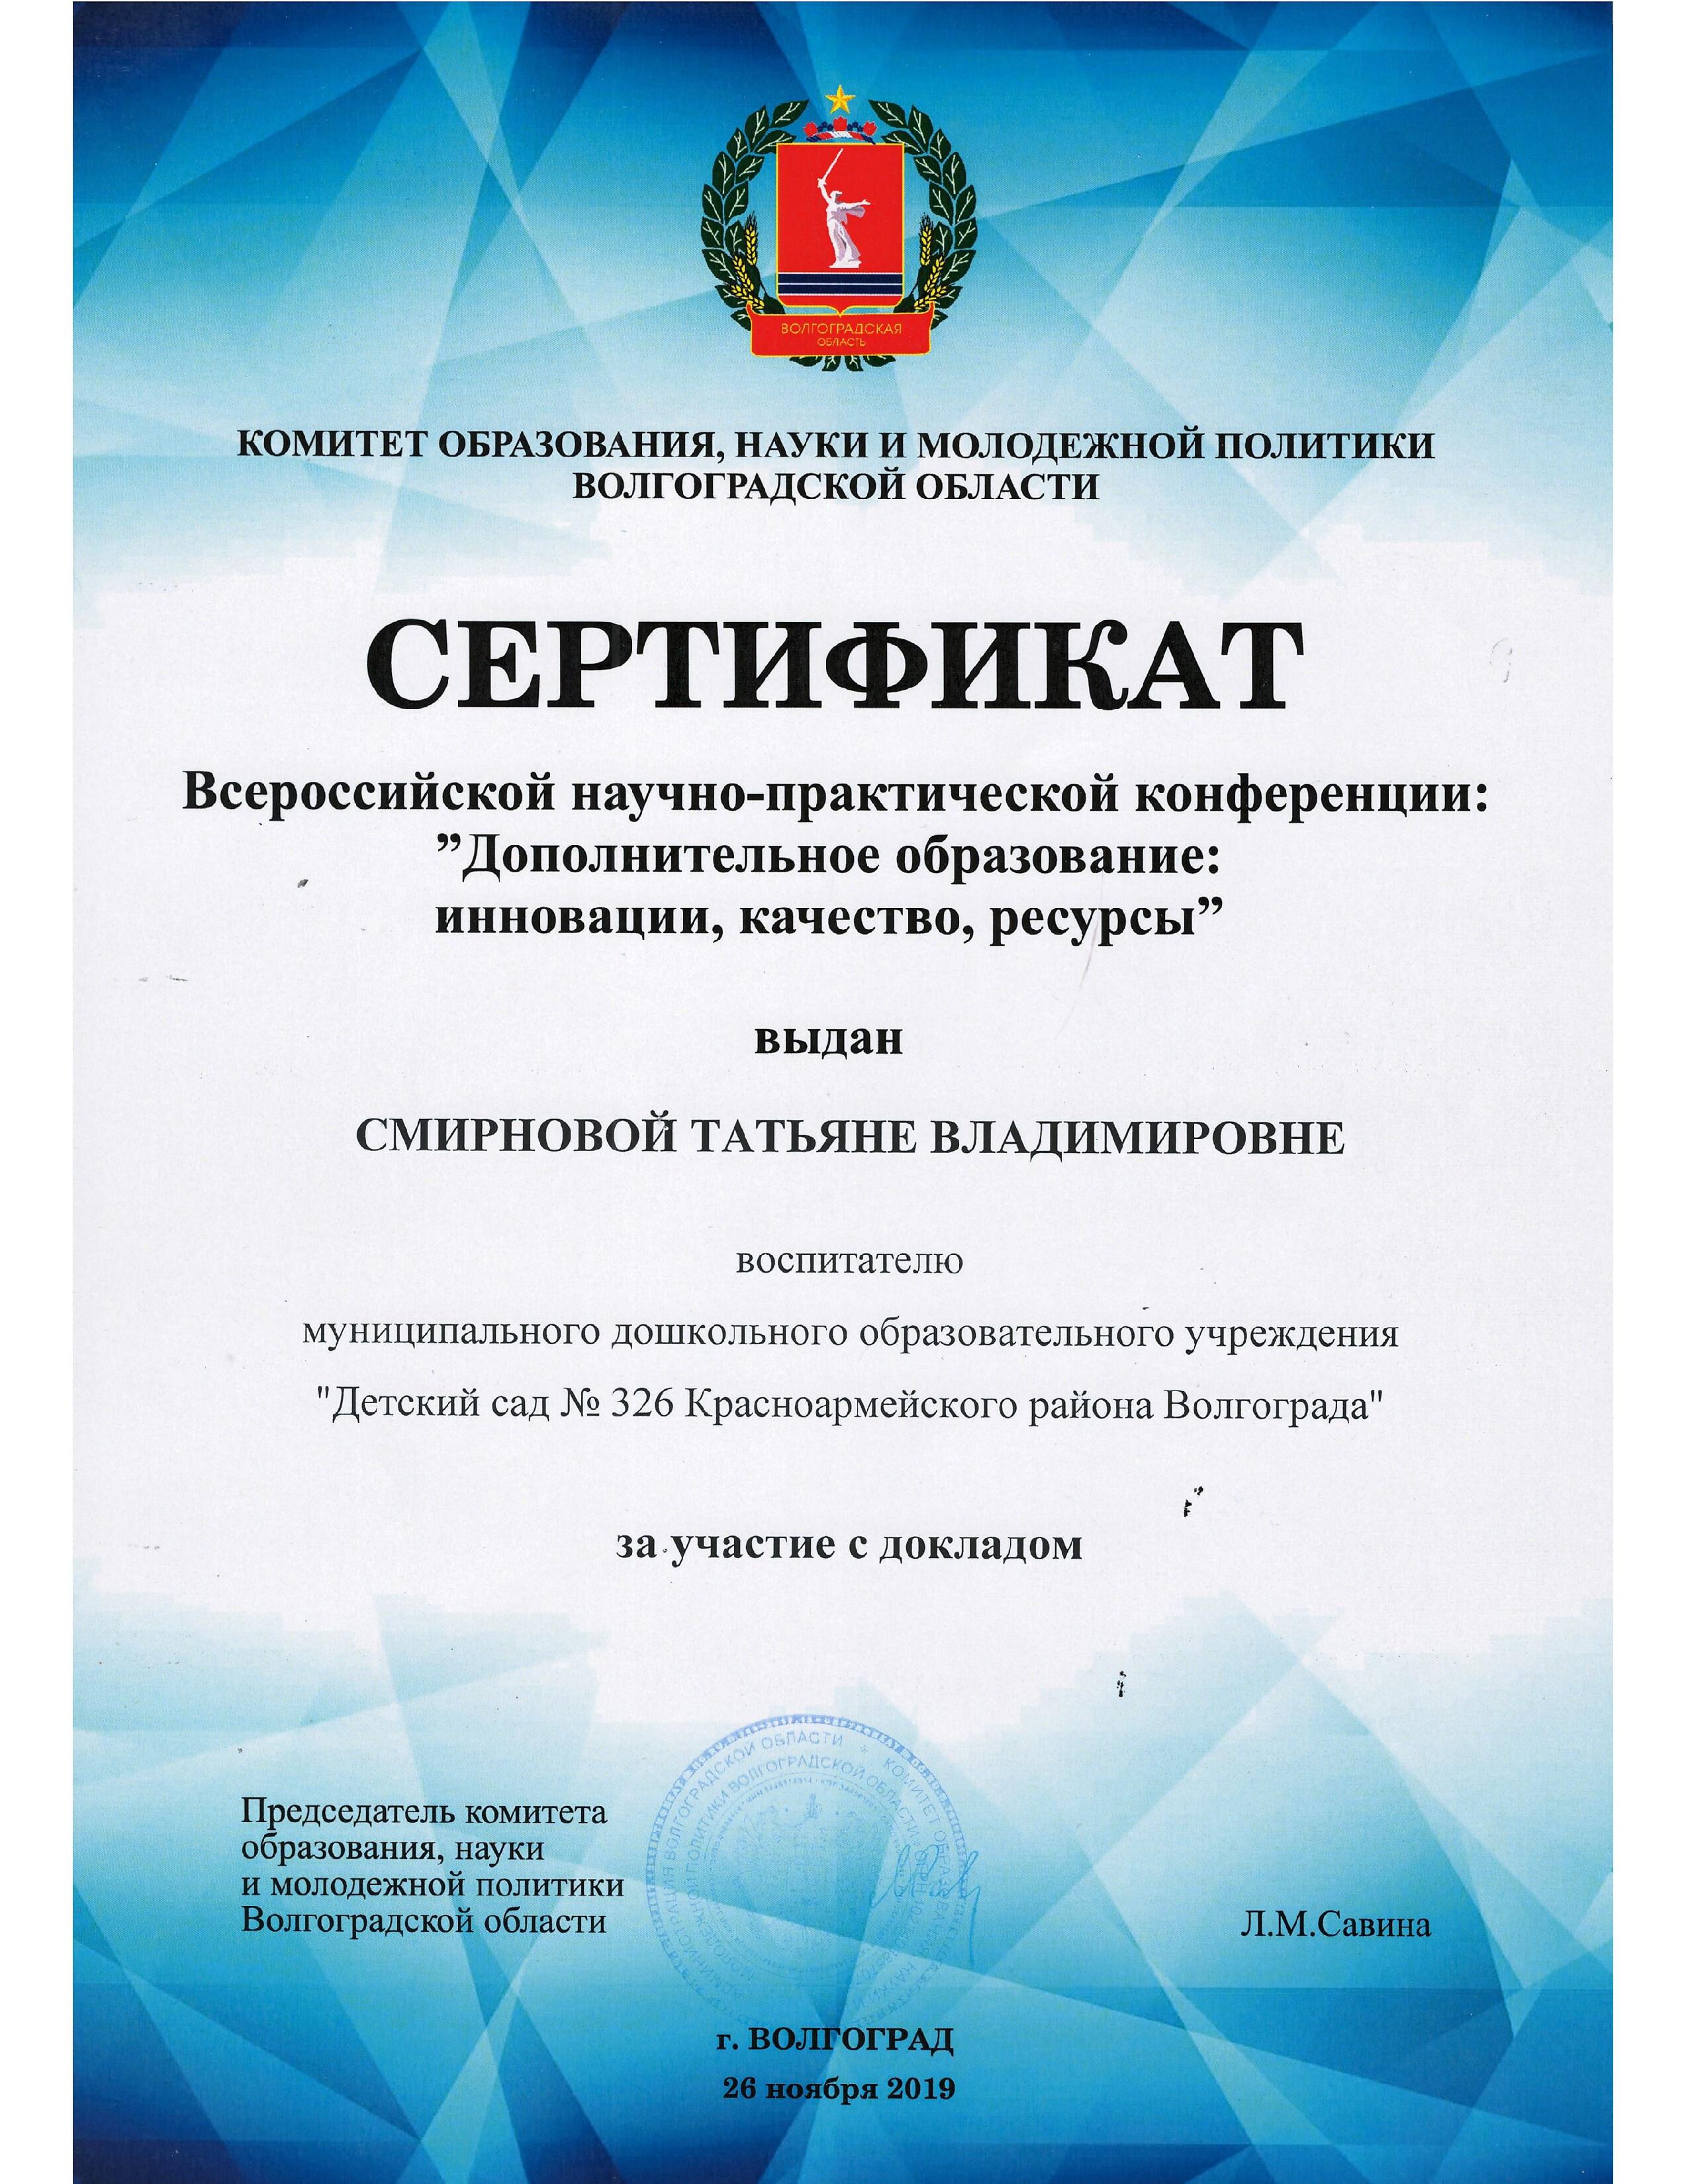 Сертификат конференции № 431 (pdf.io).jpg